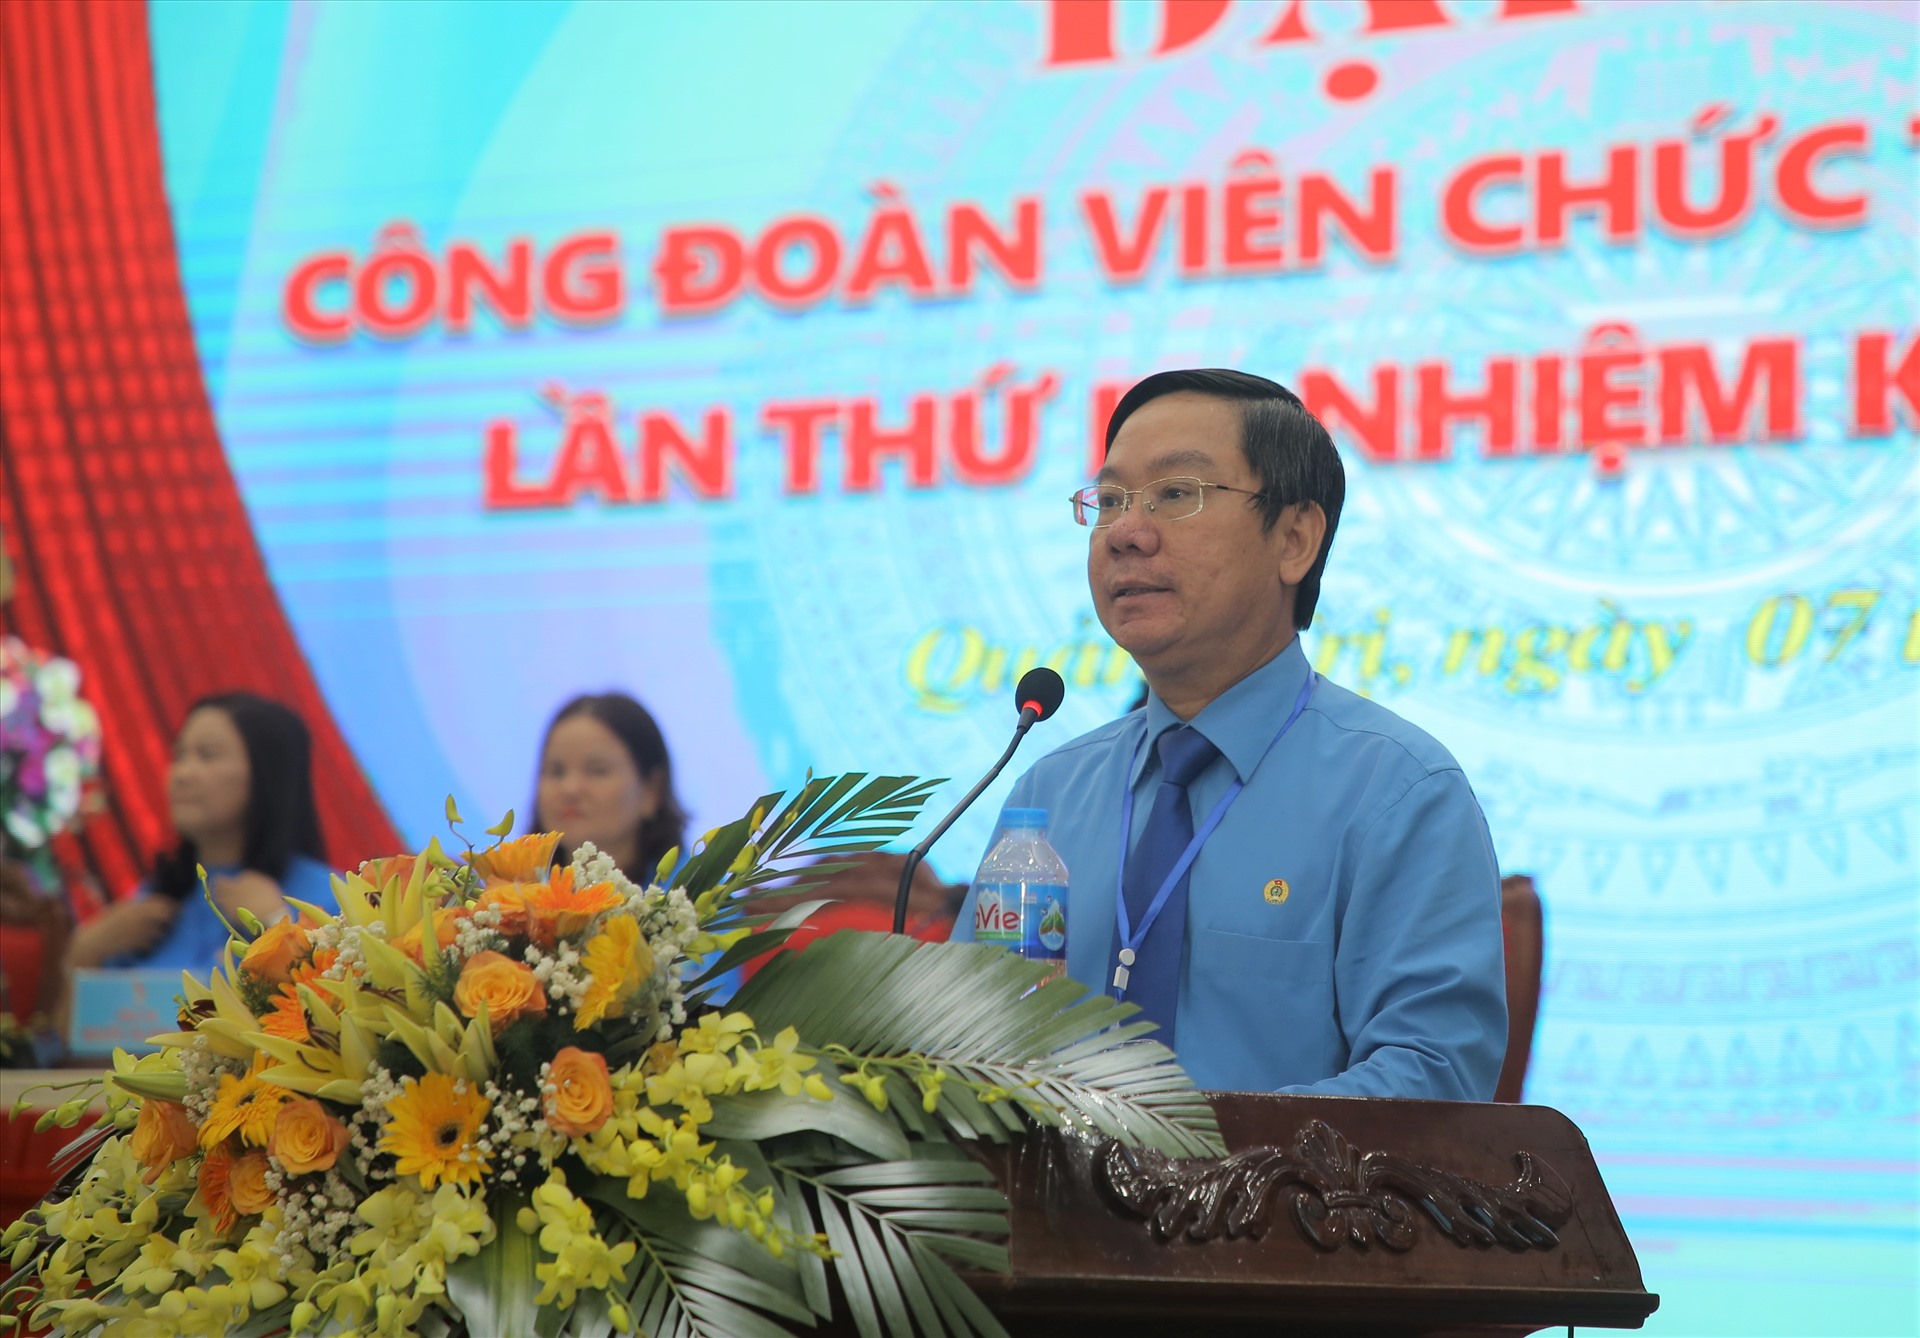 Ông Nguyễn Thế Lập - Chủ tịch LĐLĐ tỉnh Quảng Trị phát biểu tại đại hội. Ảnh: Hưng Thơ.